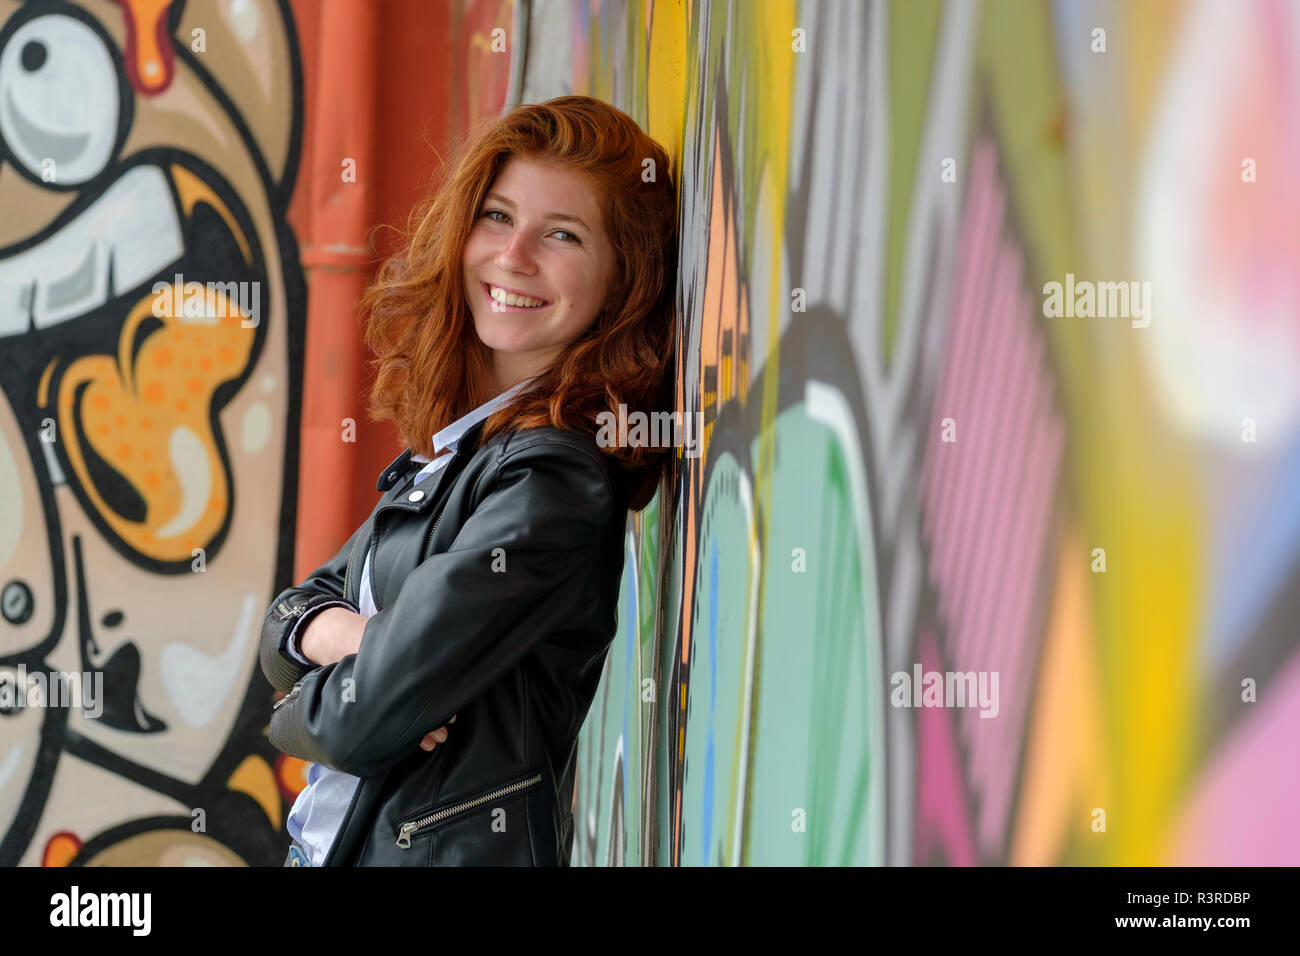 L'Italia, Finale Ligure, ritratto di sorridente ragazza adolescente appoggiata contro il murale Foto Stock